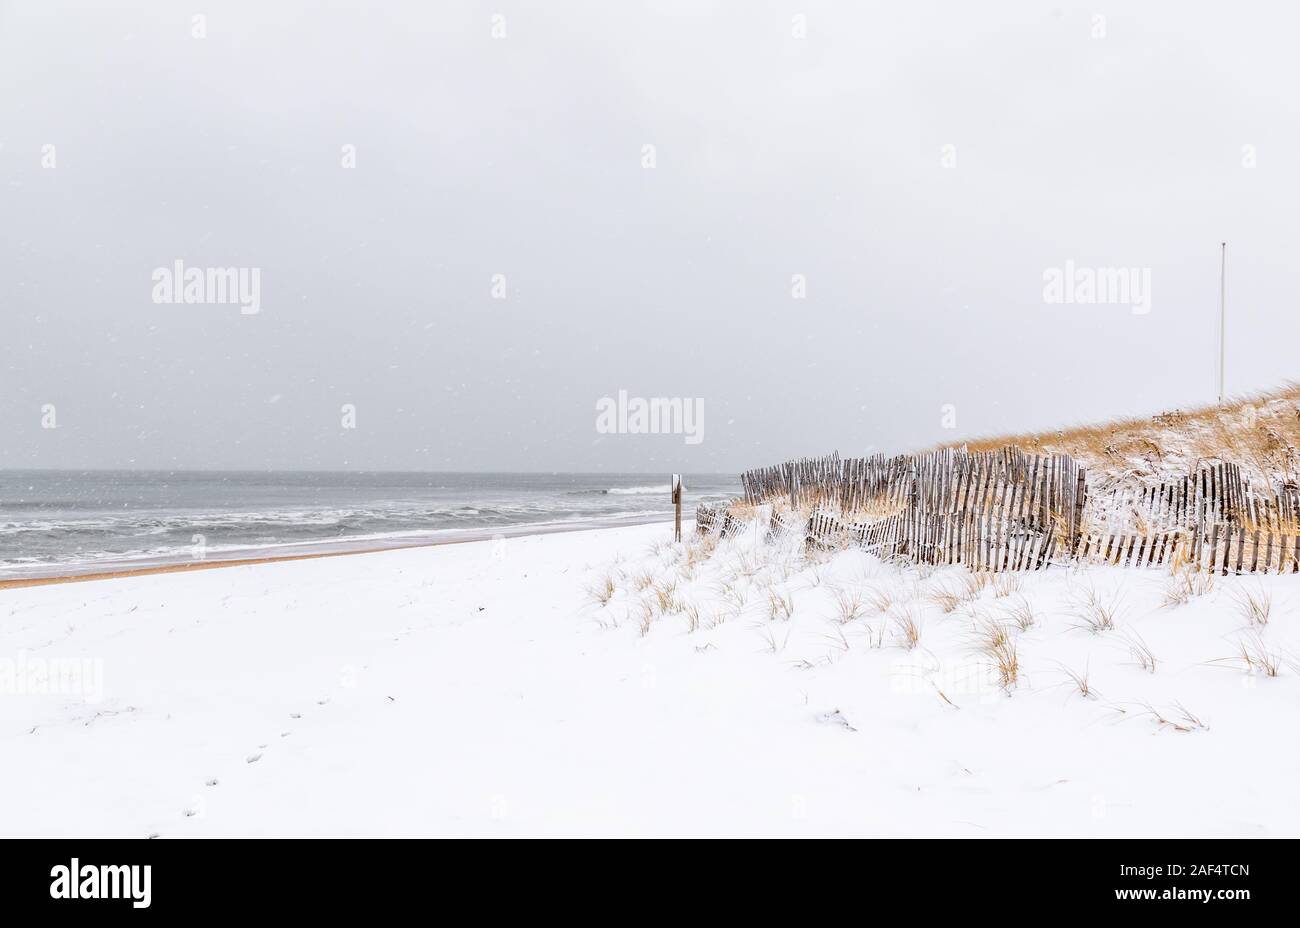 Winter landscape at an Amagansett Beach, NY Stock Photo